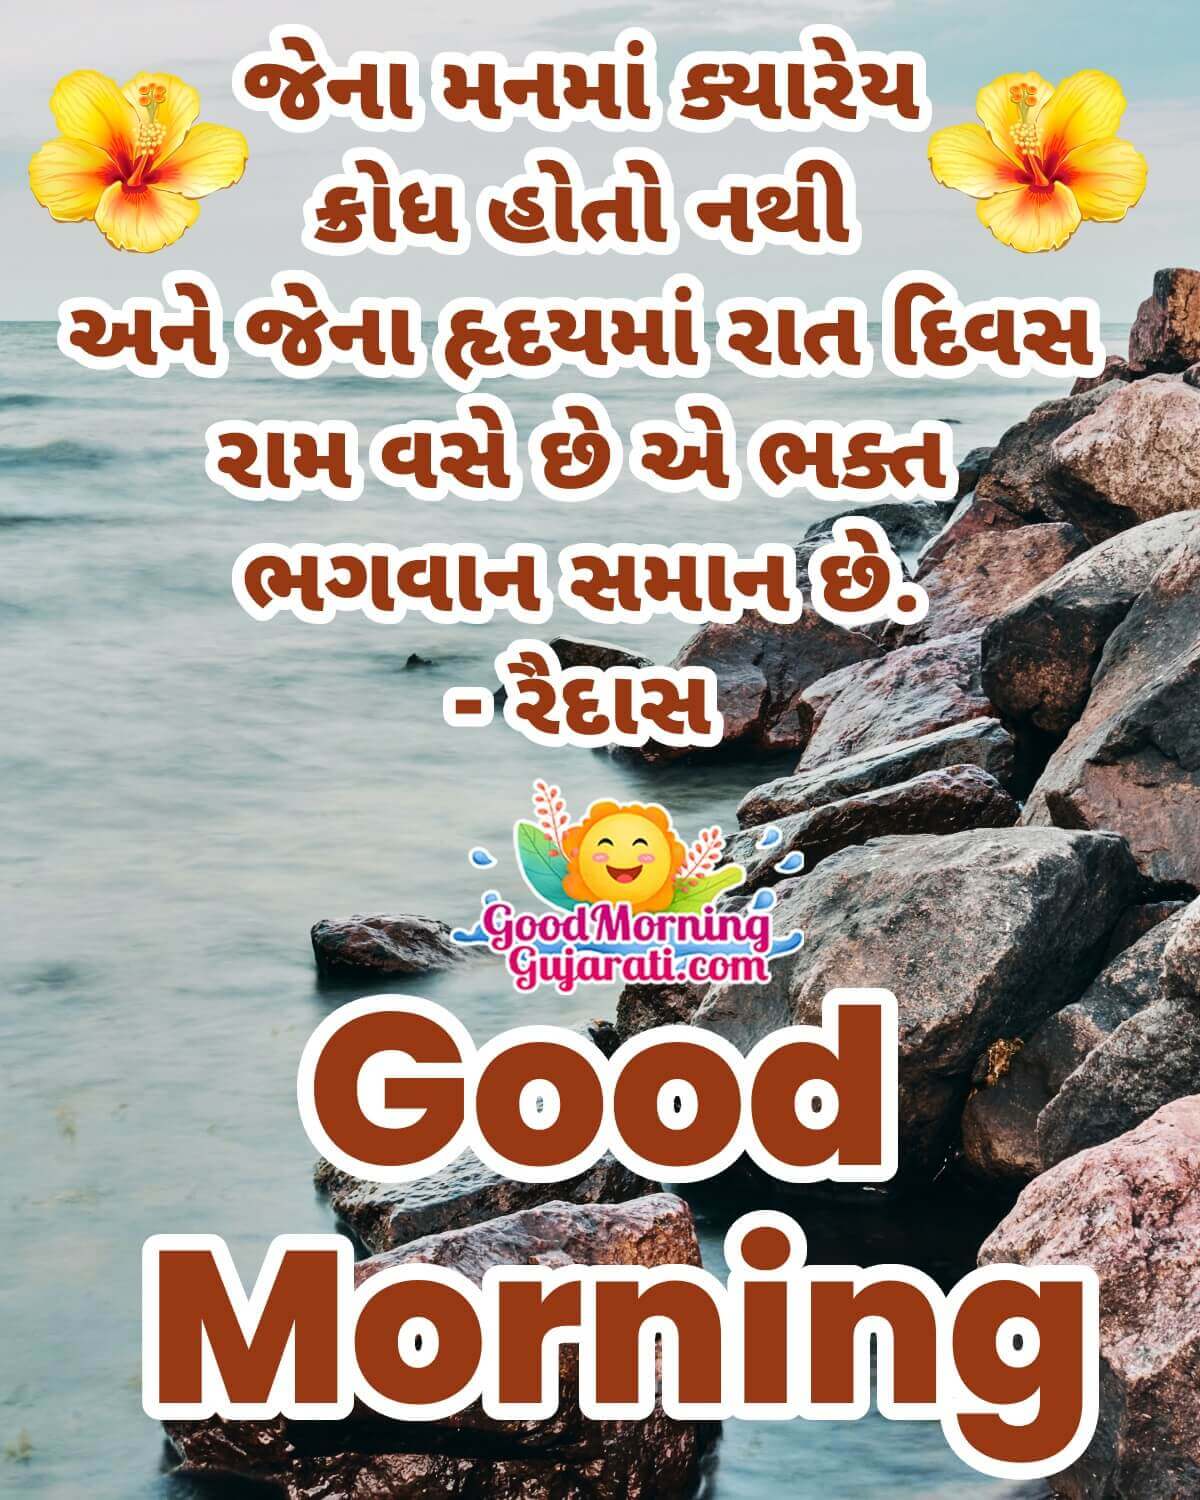 Good Morning Amazing Gujarati Quote